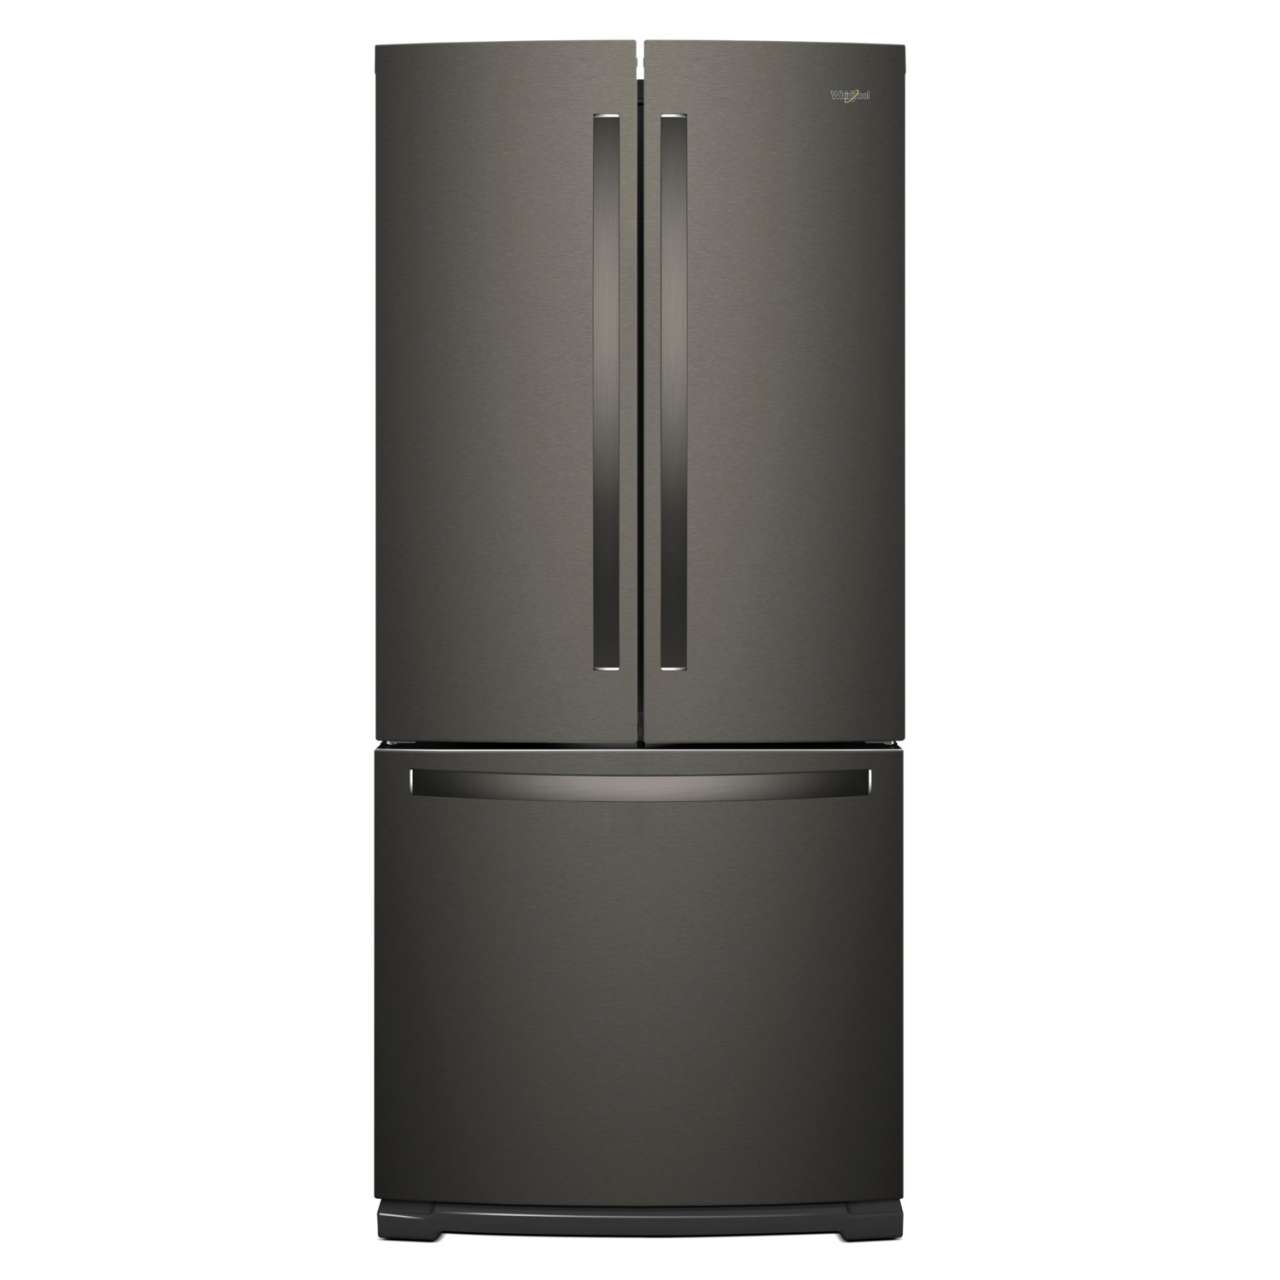 WHIRLPOOL 19.7 cu.ft., French Door Refrigerator, Black Stainless Steel Whirlpool Refrigerator Black Stainless Steel